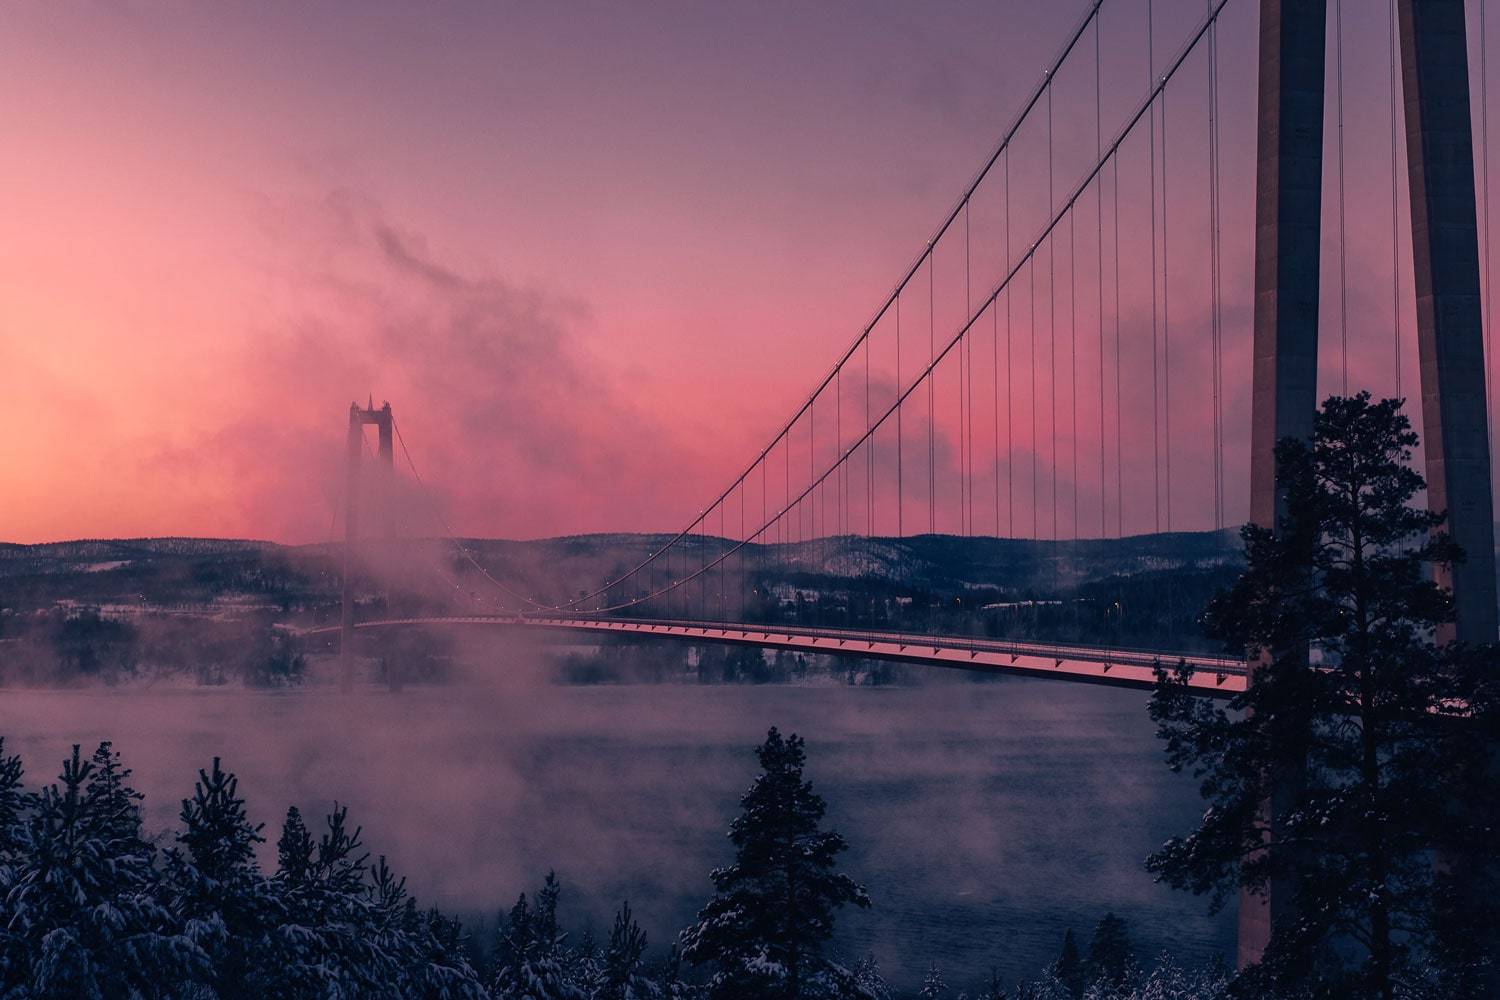 Högakustenbron, Sweden